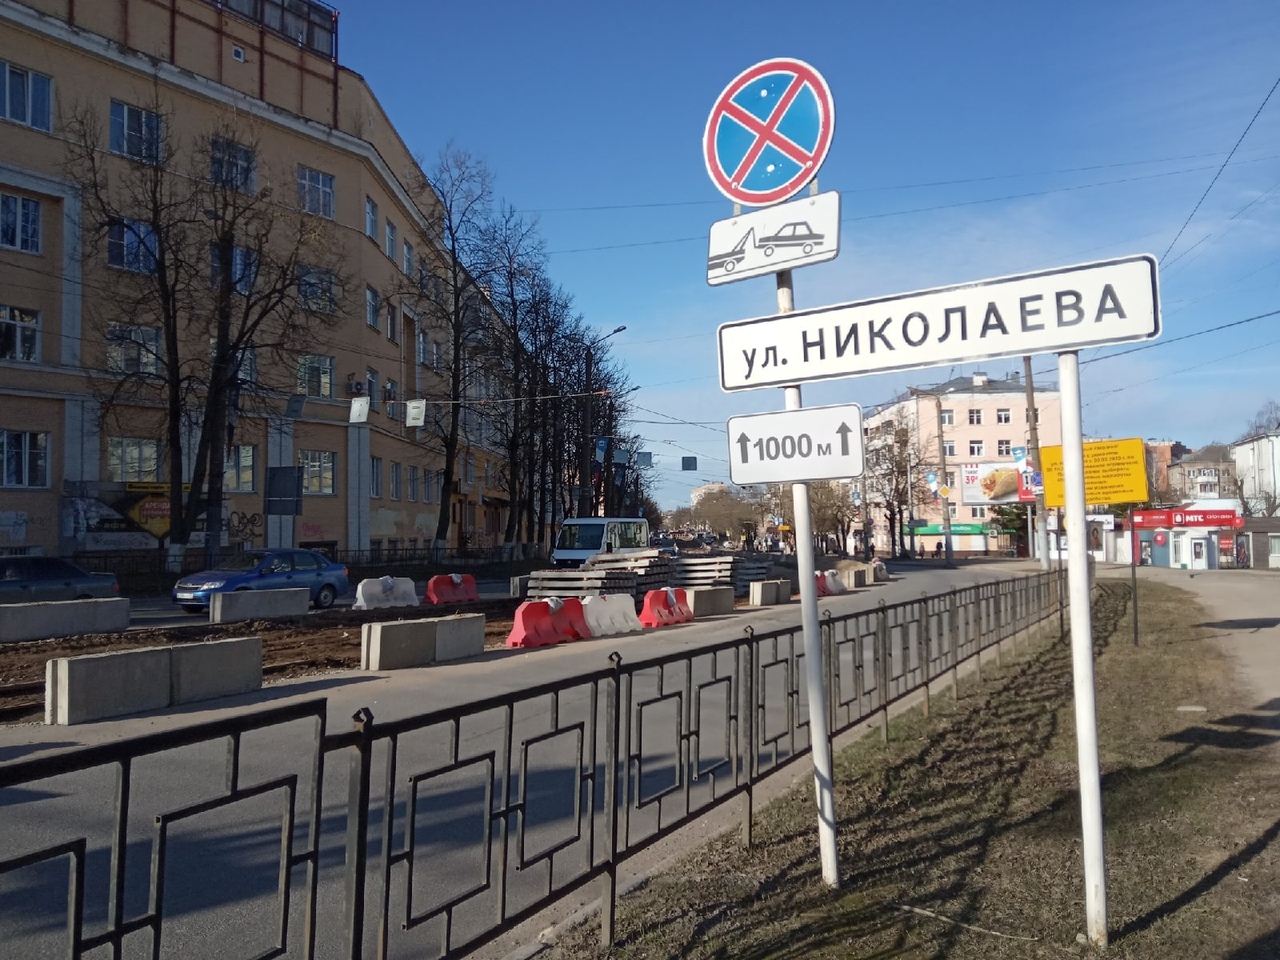 В Смоленске муниципальные автобусы вместо улицы Николаева пойдут по улице Кирова